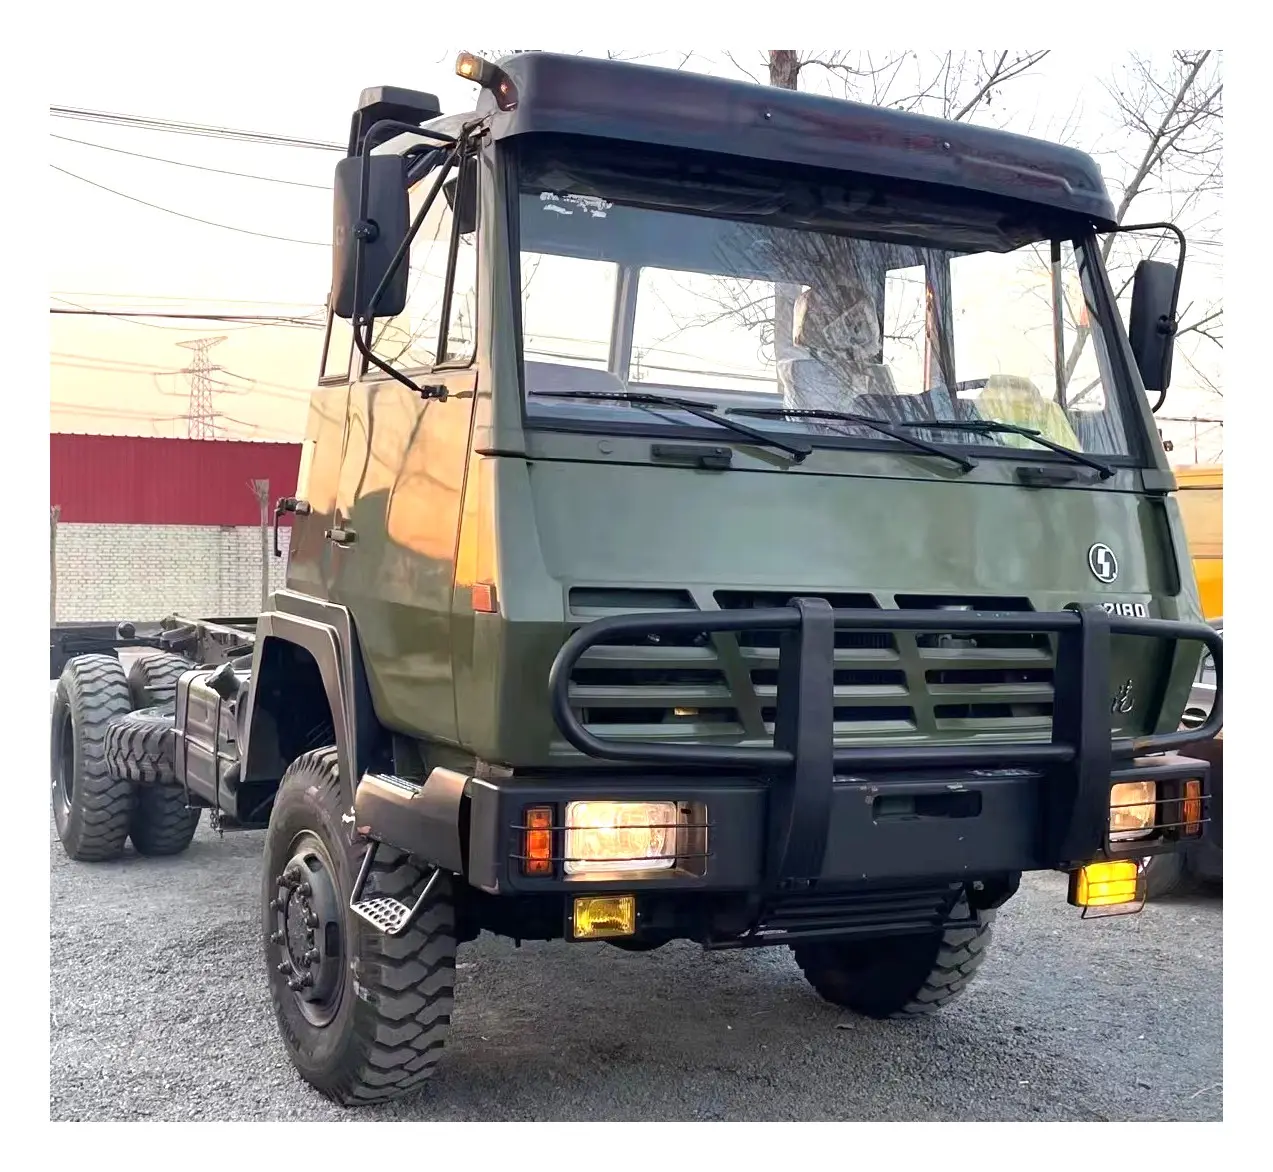 Gebrauchte LKW Gute Qualität gebrauchte Dump Shacmam sx2180 LKW Gebrauchte Trucks von chinesischen Marken zu verkaufen